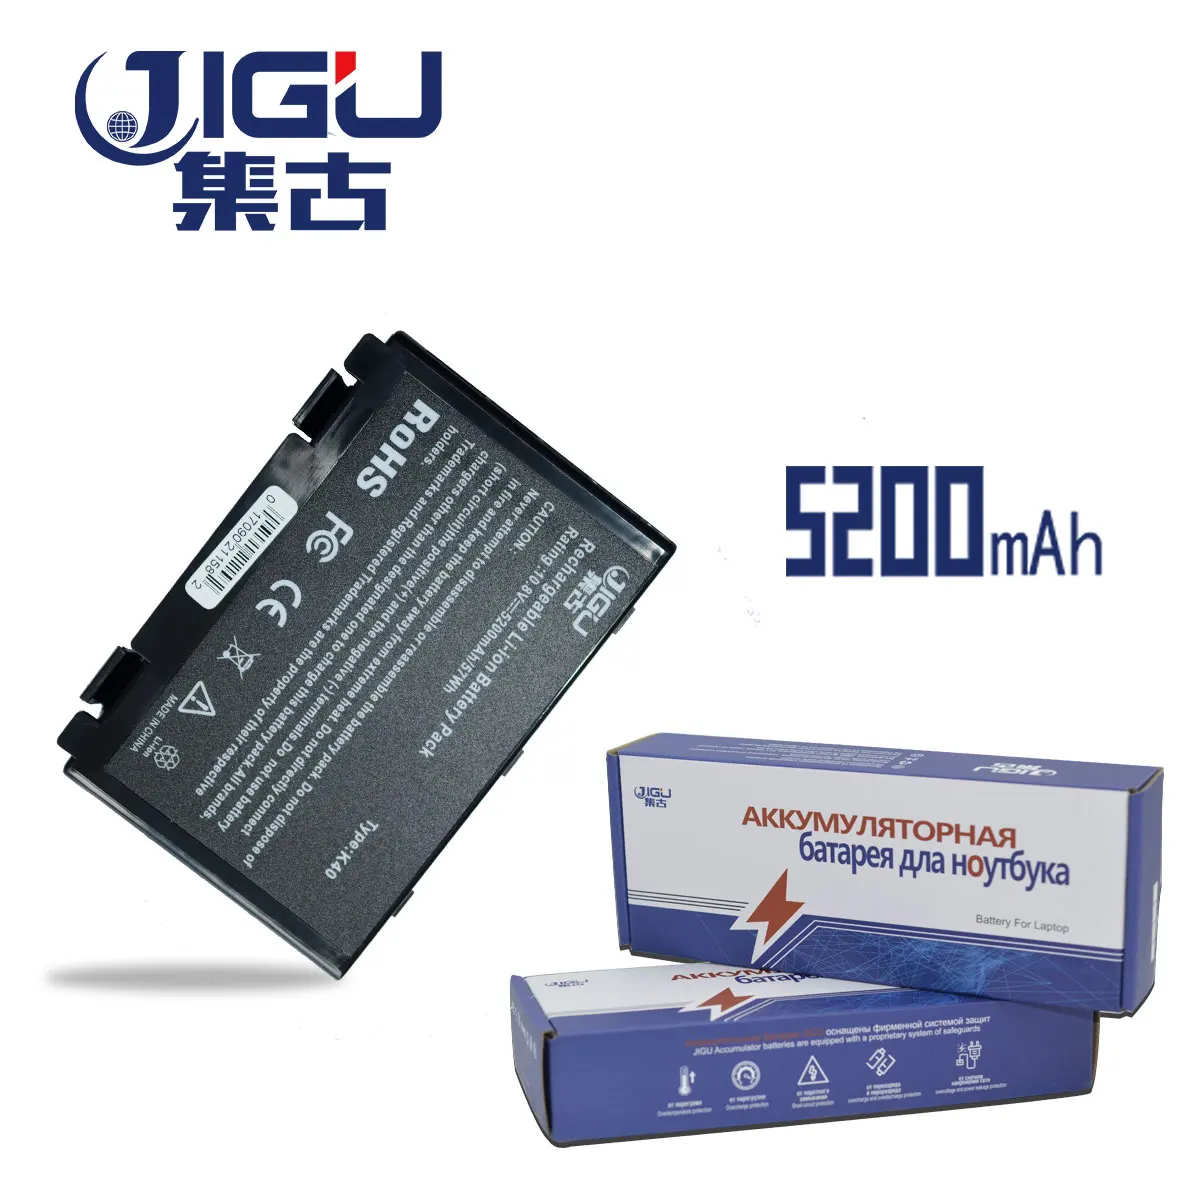 JIGU K50in Аккумулятор для ноутбука ASUS A32-F52 A32-F82 L0690L6 L0A2016 F82 K40 K50 K51 K60 K61 K70 P81 X5A X5E X8A K50IJ K50ab K50ij